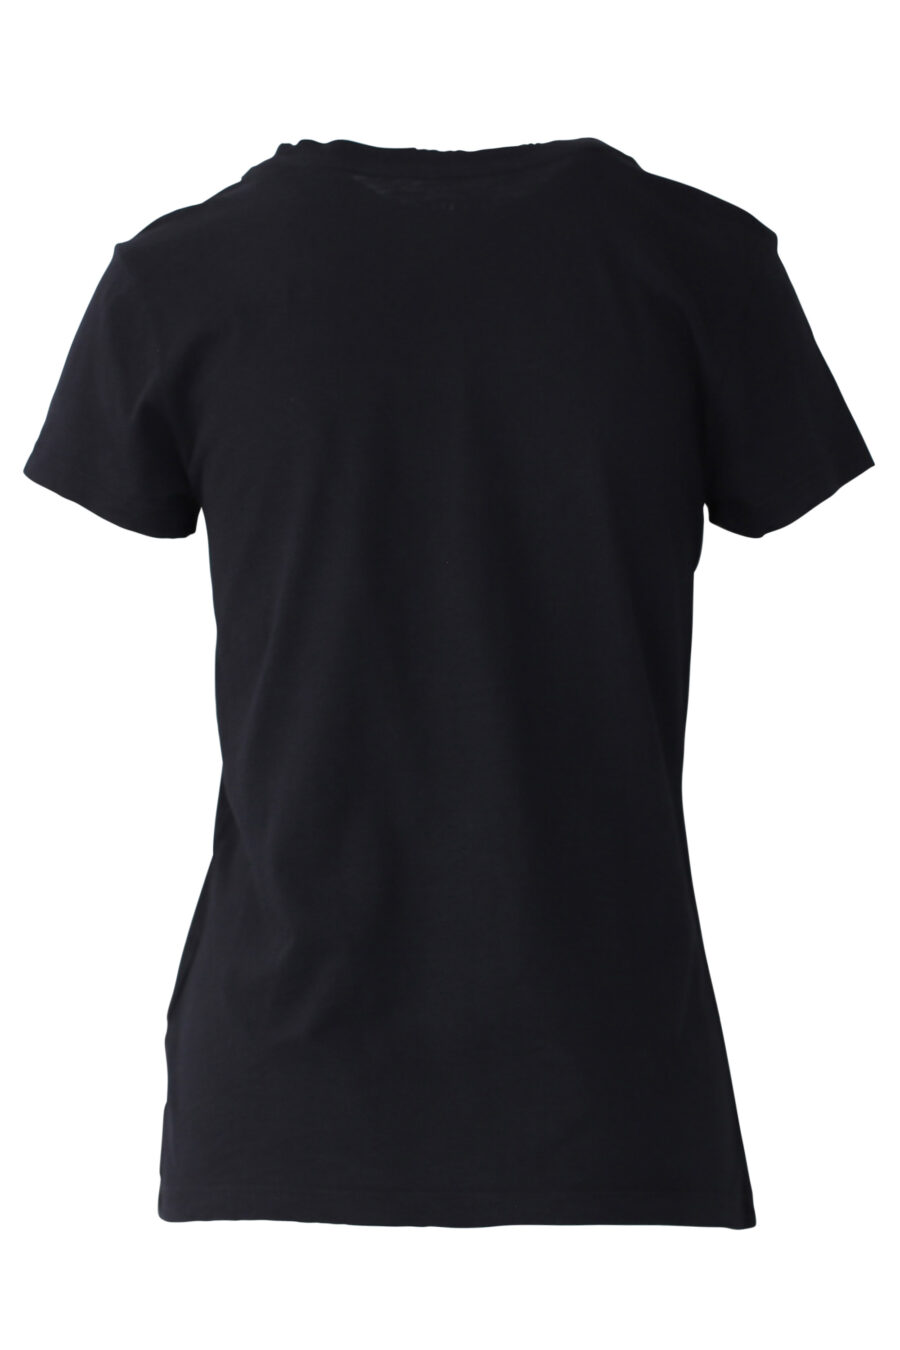 T-shirt preta com maxilogo bordado com strass - IMG 0662